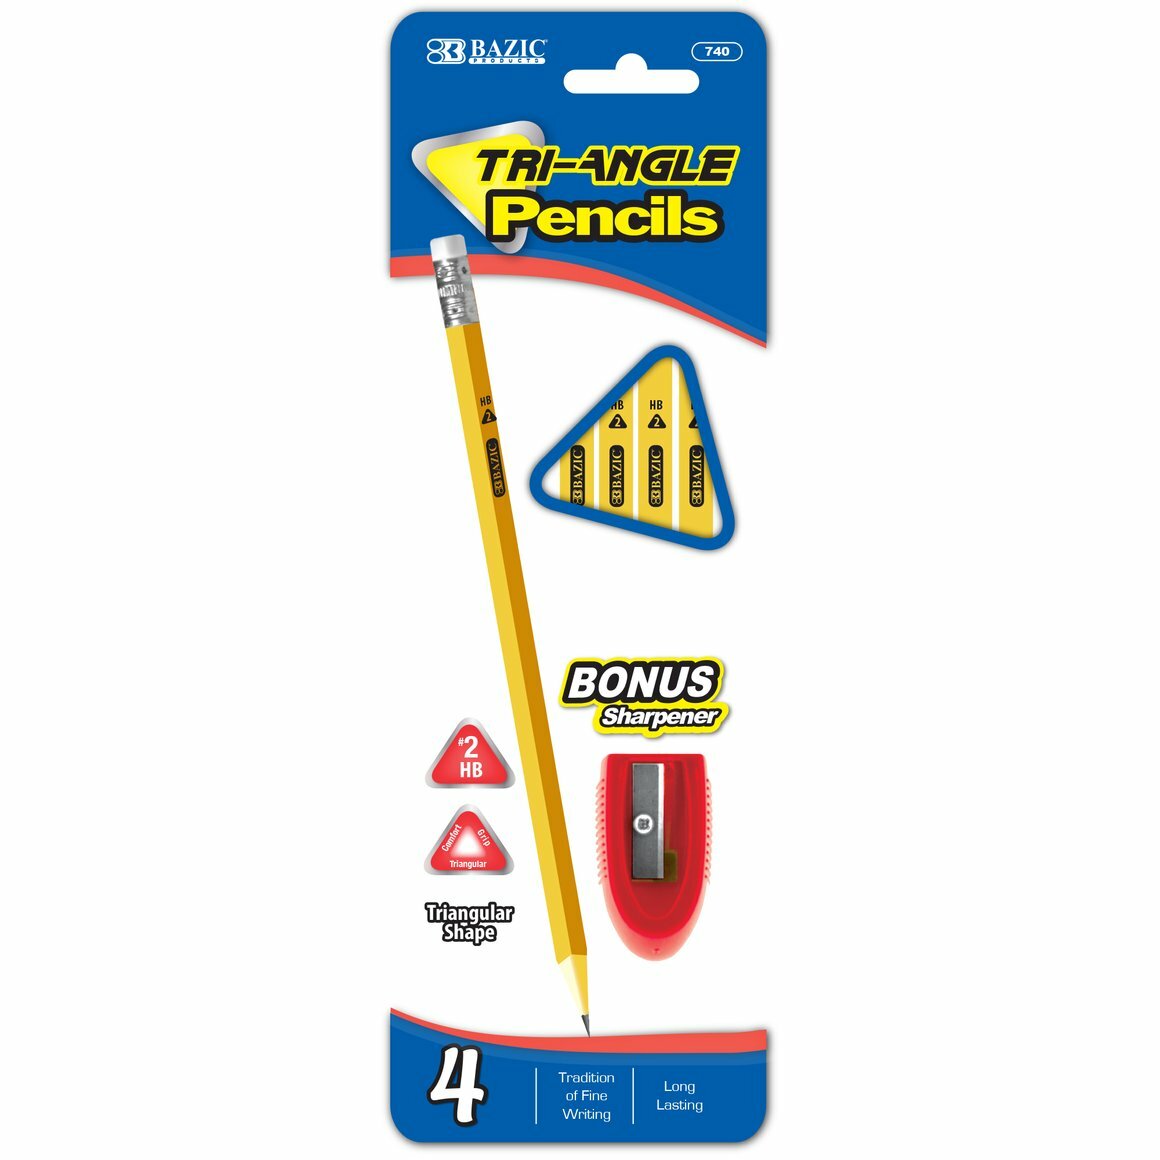 Pencil #2/Triangle 4Pk (IN-6) (740)